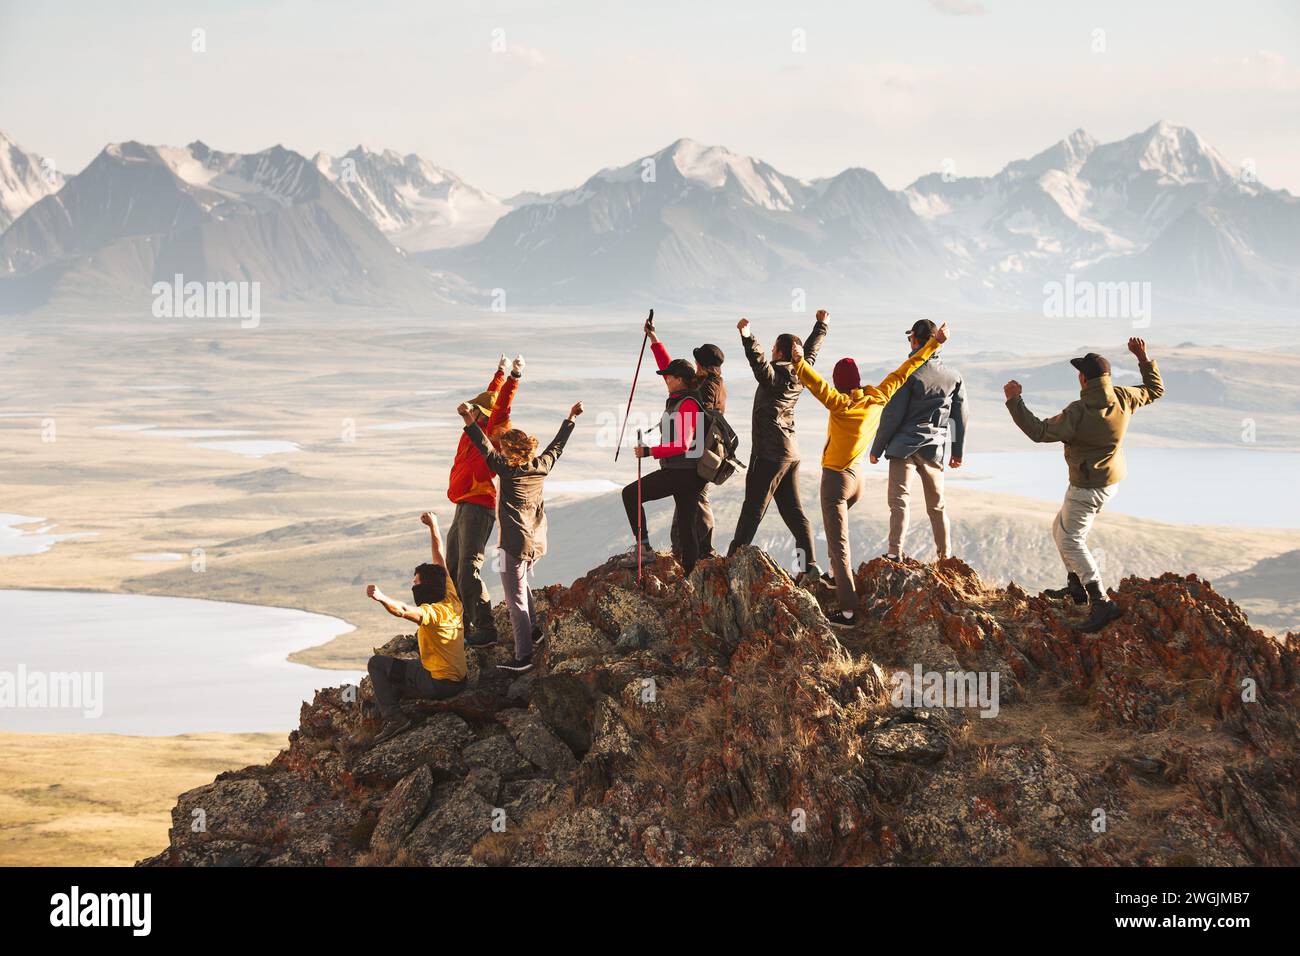 Un grand groupe de touristes divers célèbre l'achèvement de leur ascension au sommet de la montagne avec une vue magnifique au coucher du soleil. Âges et compétences mixtes Banque D'Images